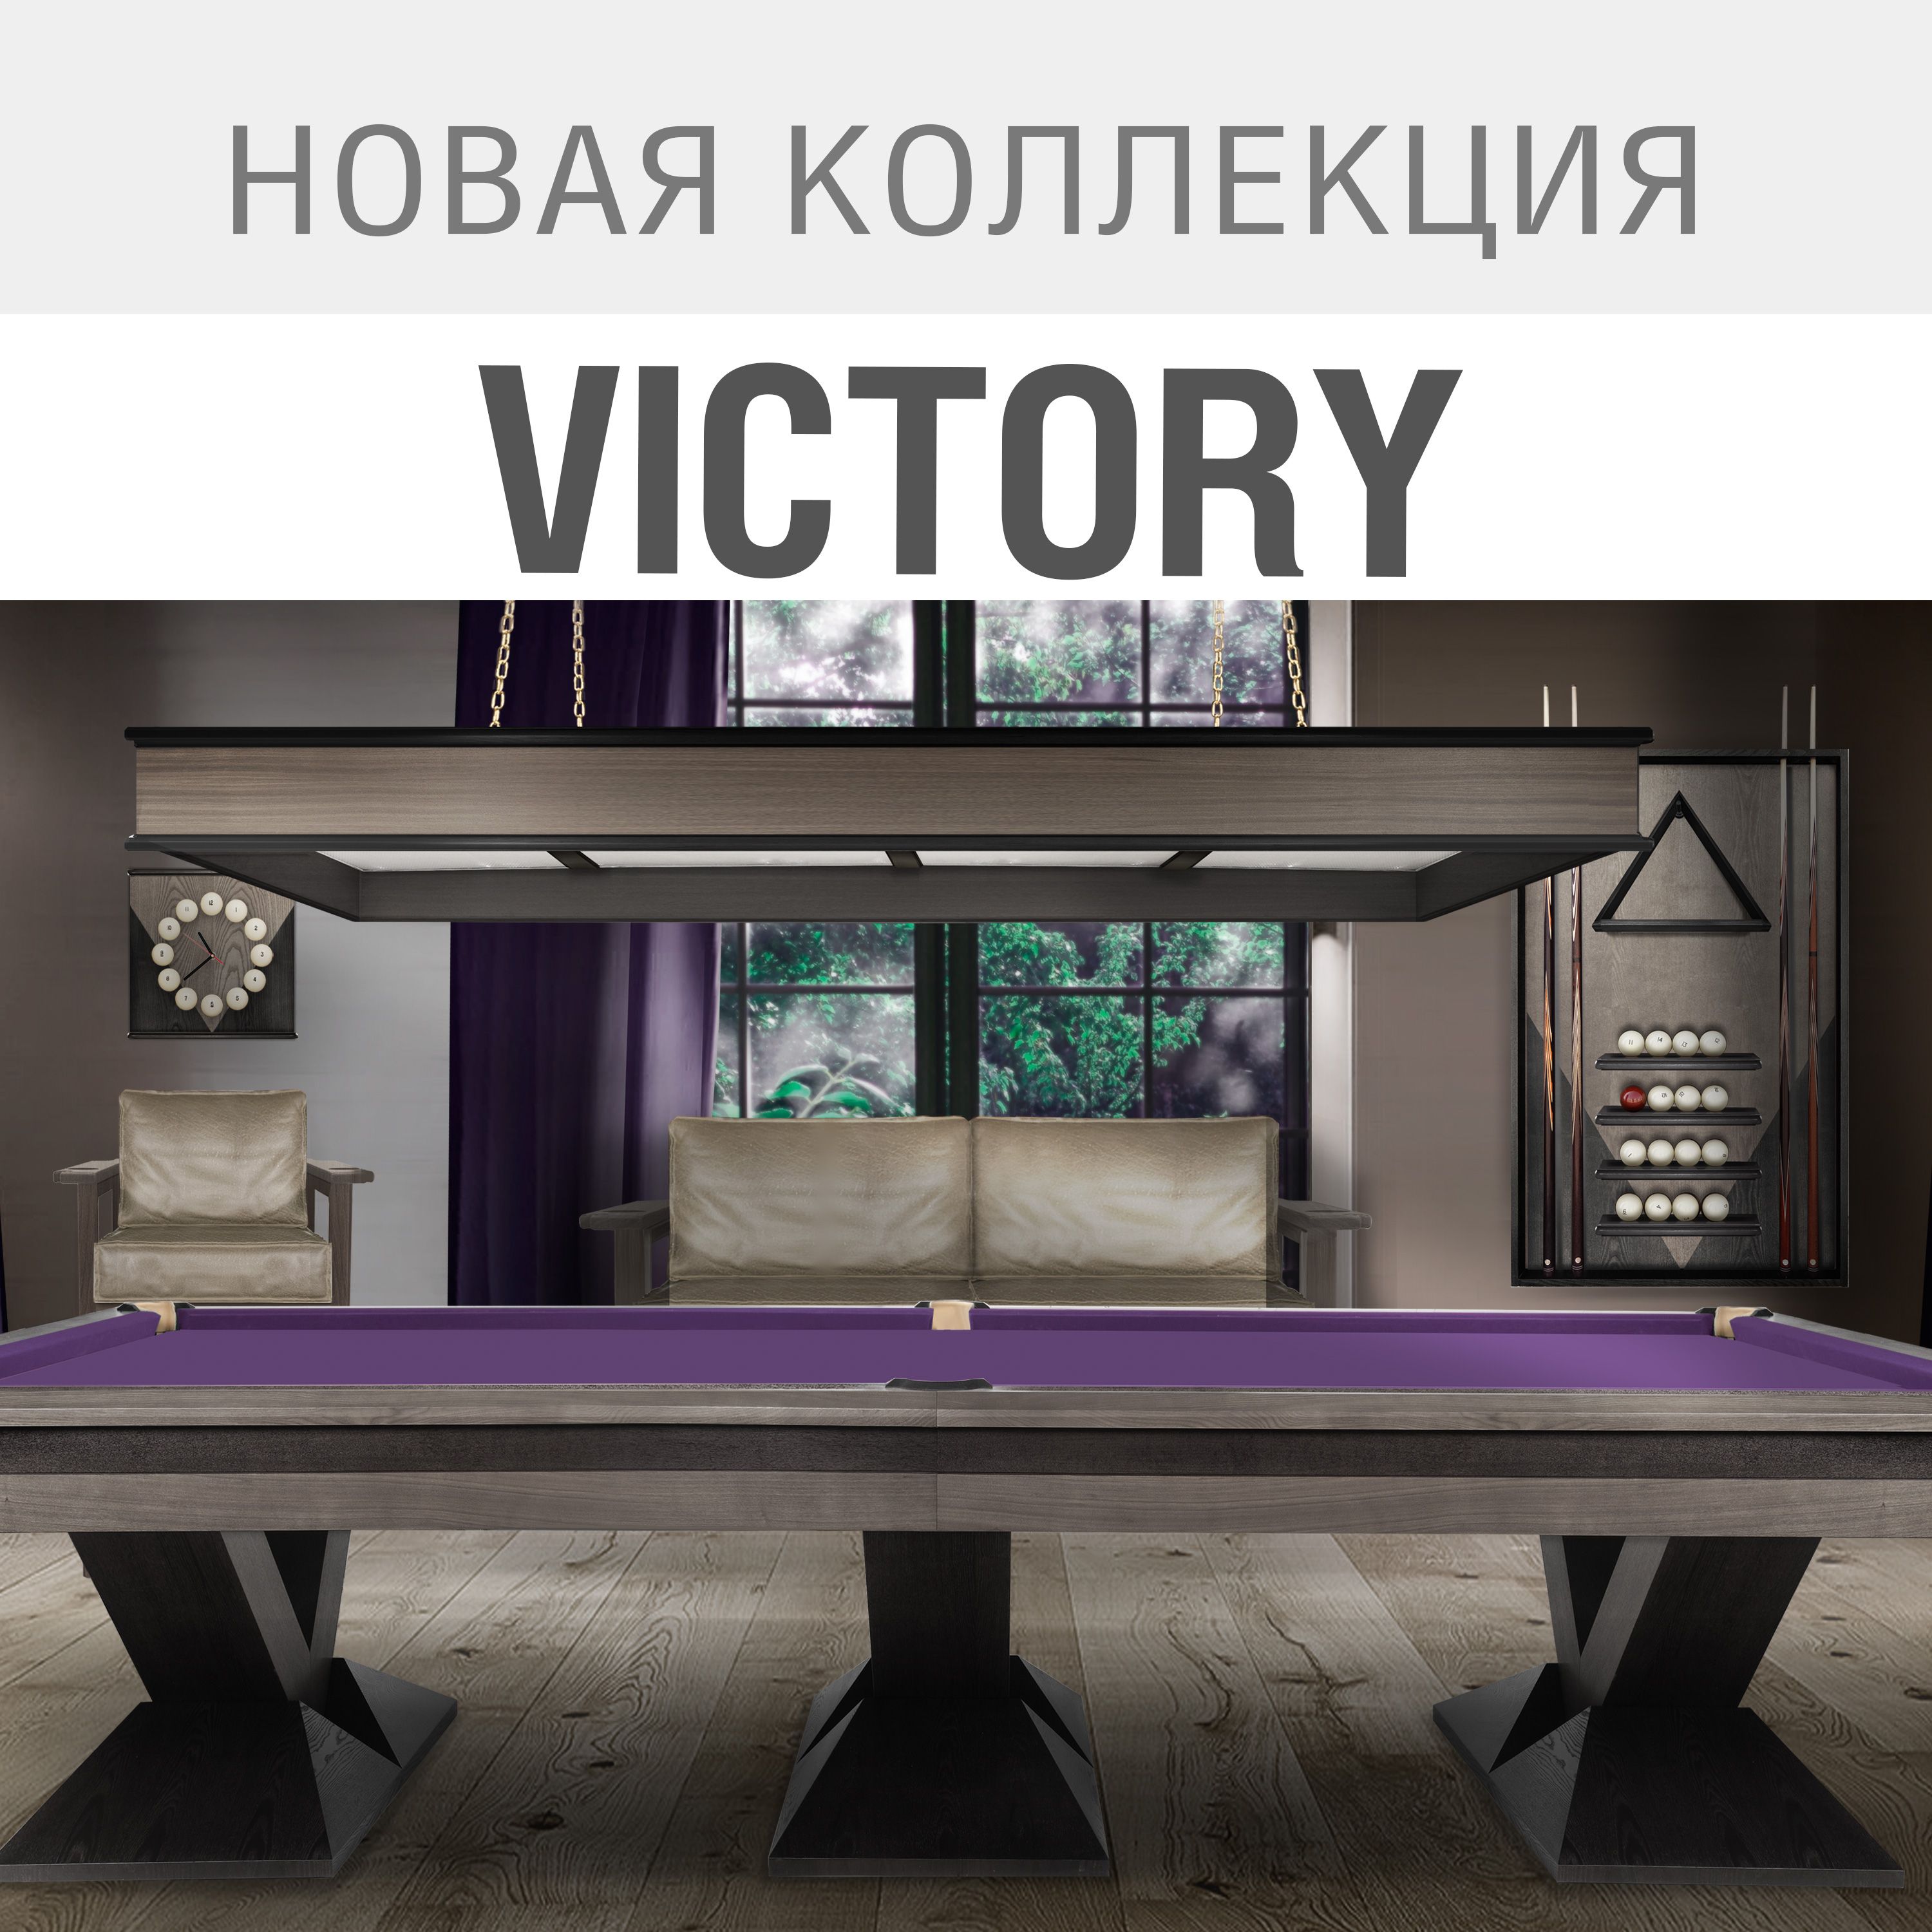 Новая бильярдная коллекция Victory – современный стиль и непревзойденное качество